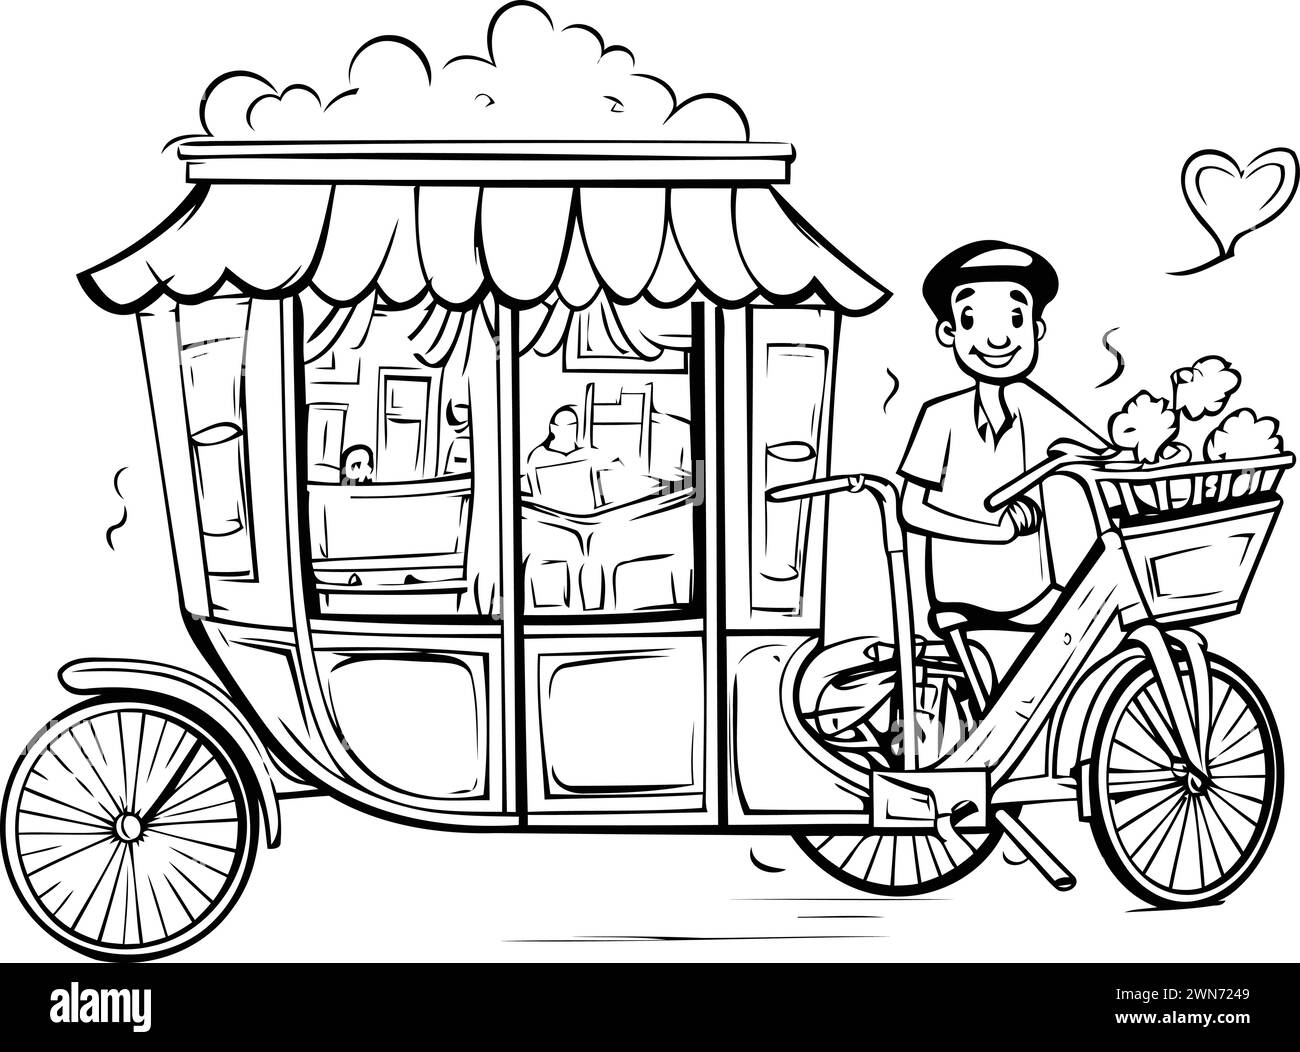 Vektor-Illustration eines Mannes, der auf einem Dreirad reitet und Nahrung liefert. Stock Vektor